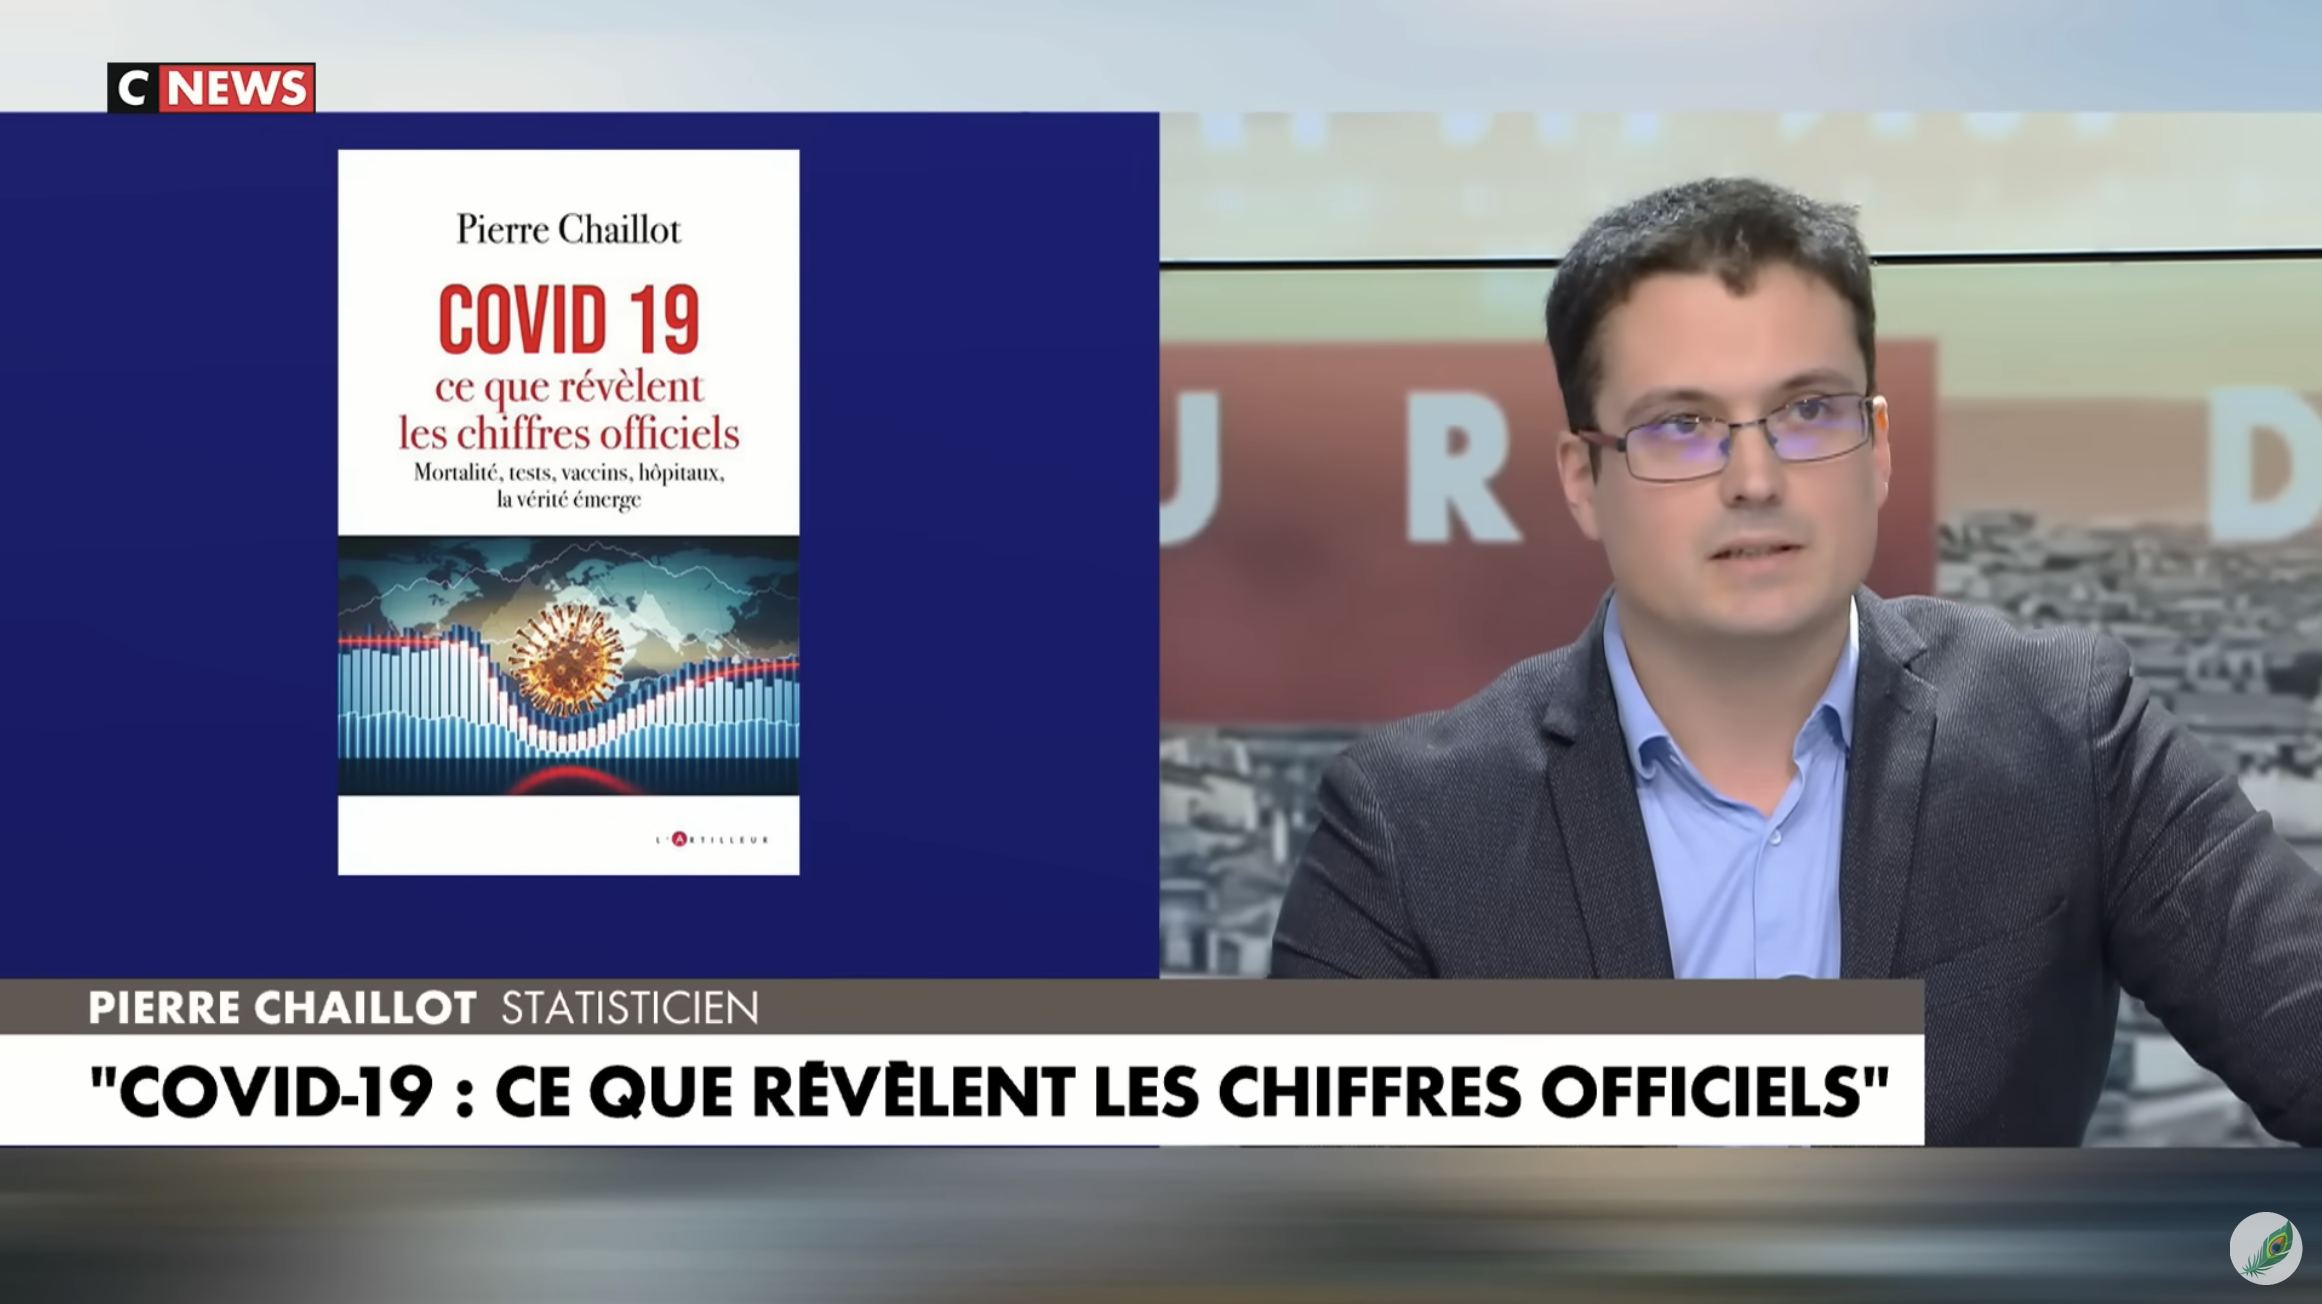 Covid : Le statisticien Pierre Chaillot présente son livre explosif et étrille Laurent Joffrin en direct chez Pascal Praud (VIDÉO)